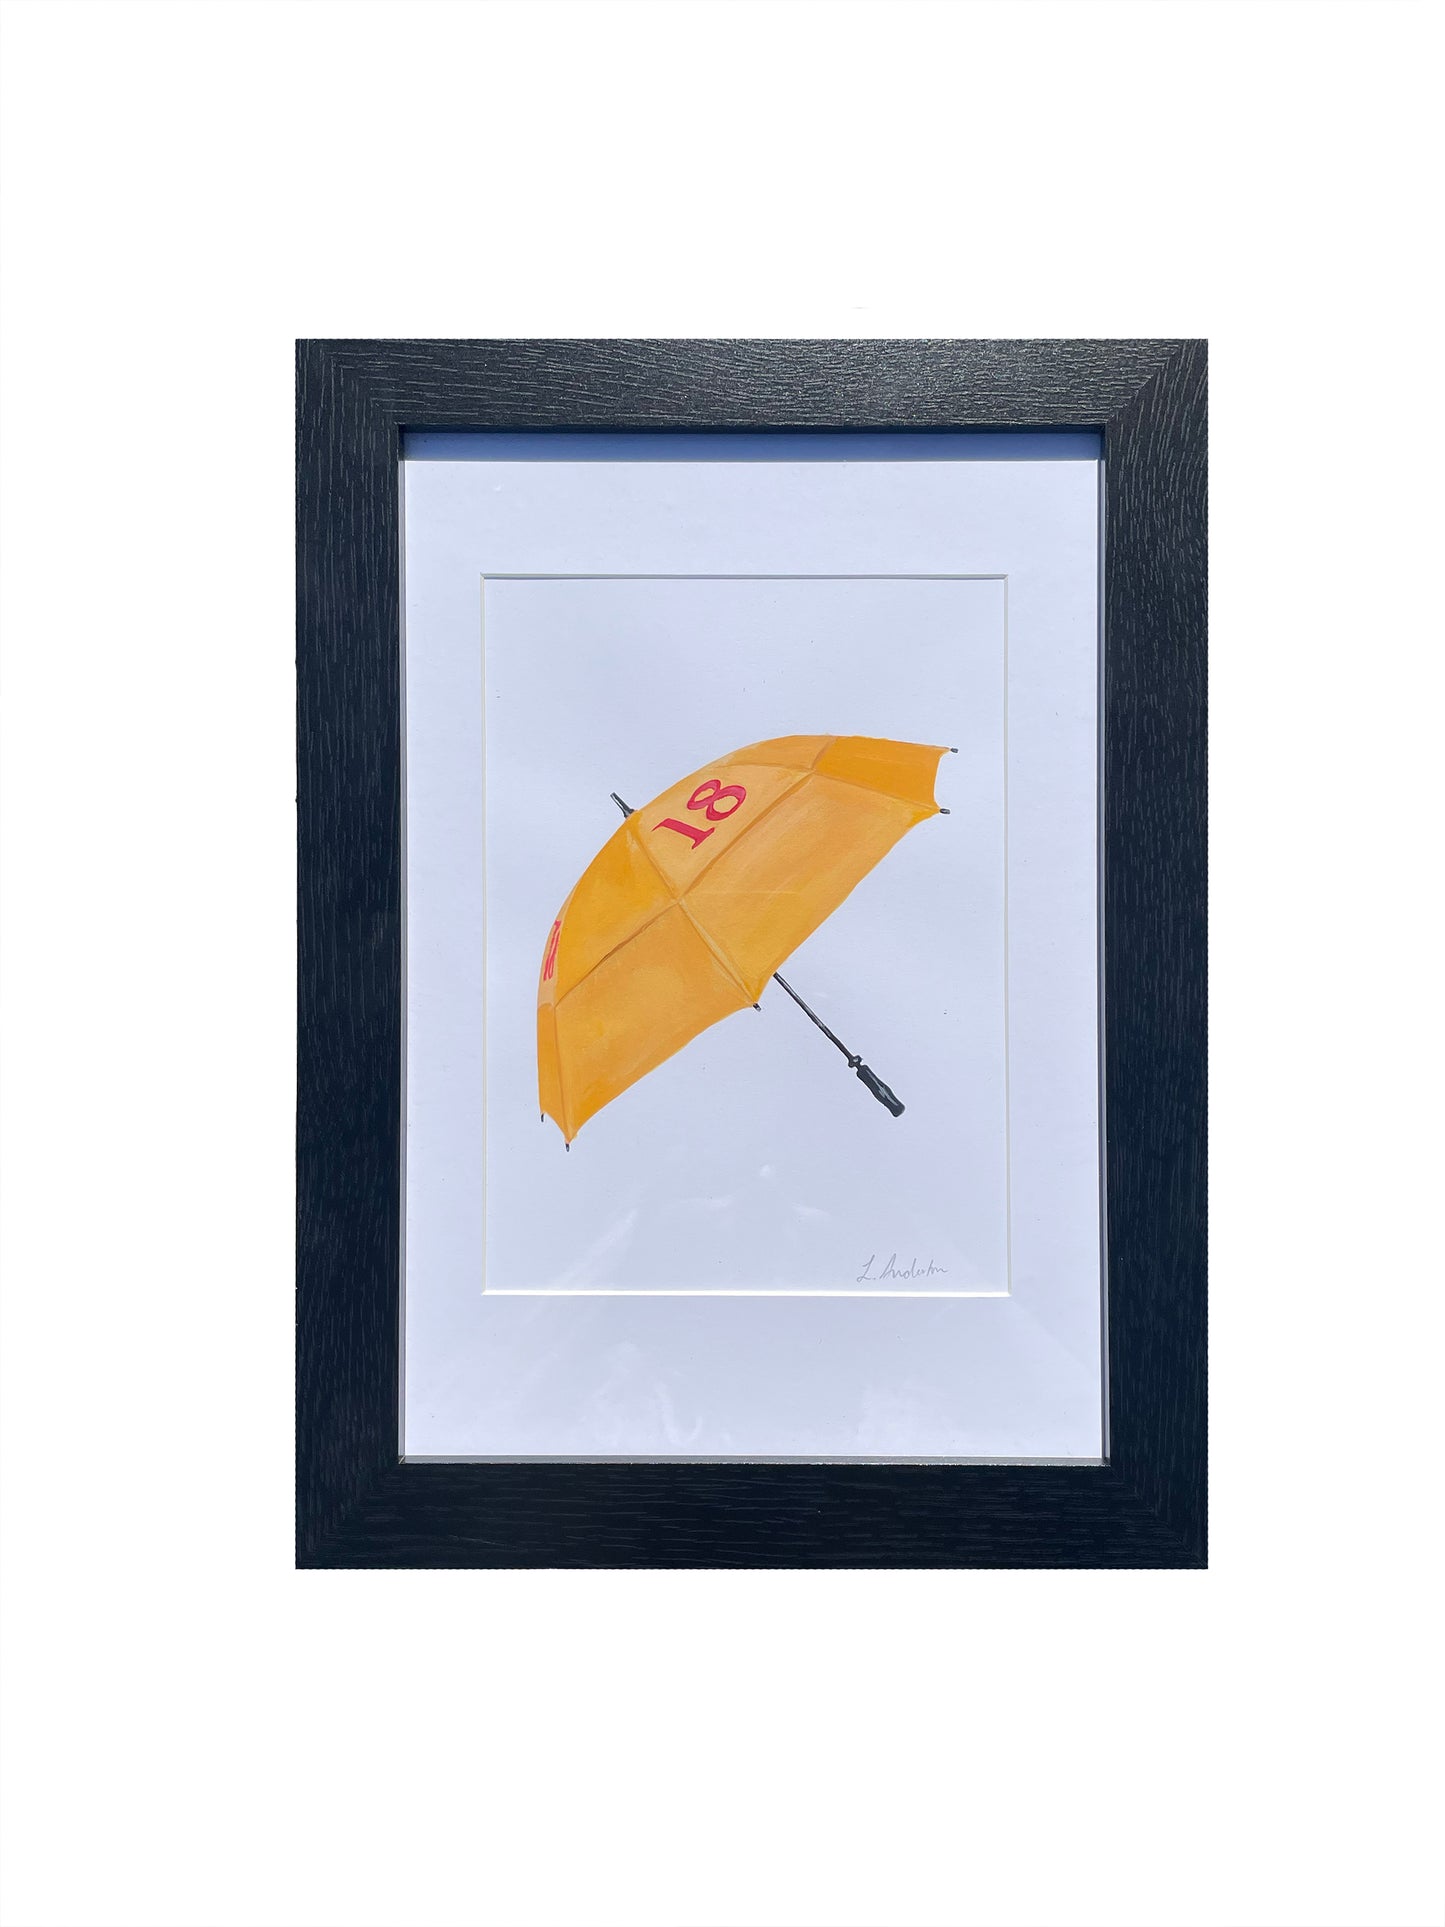 Golf Umbrella Original Painting